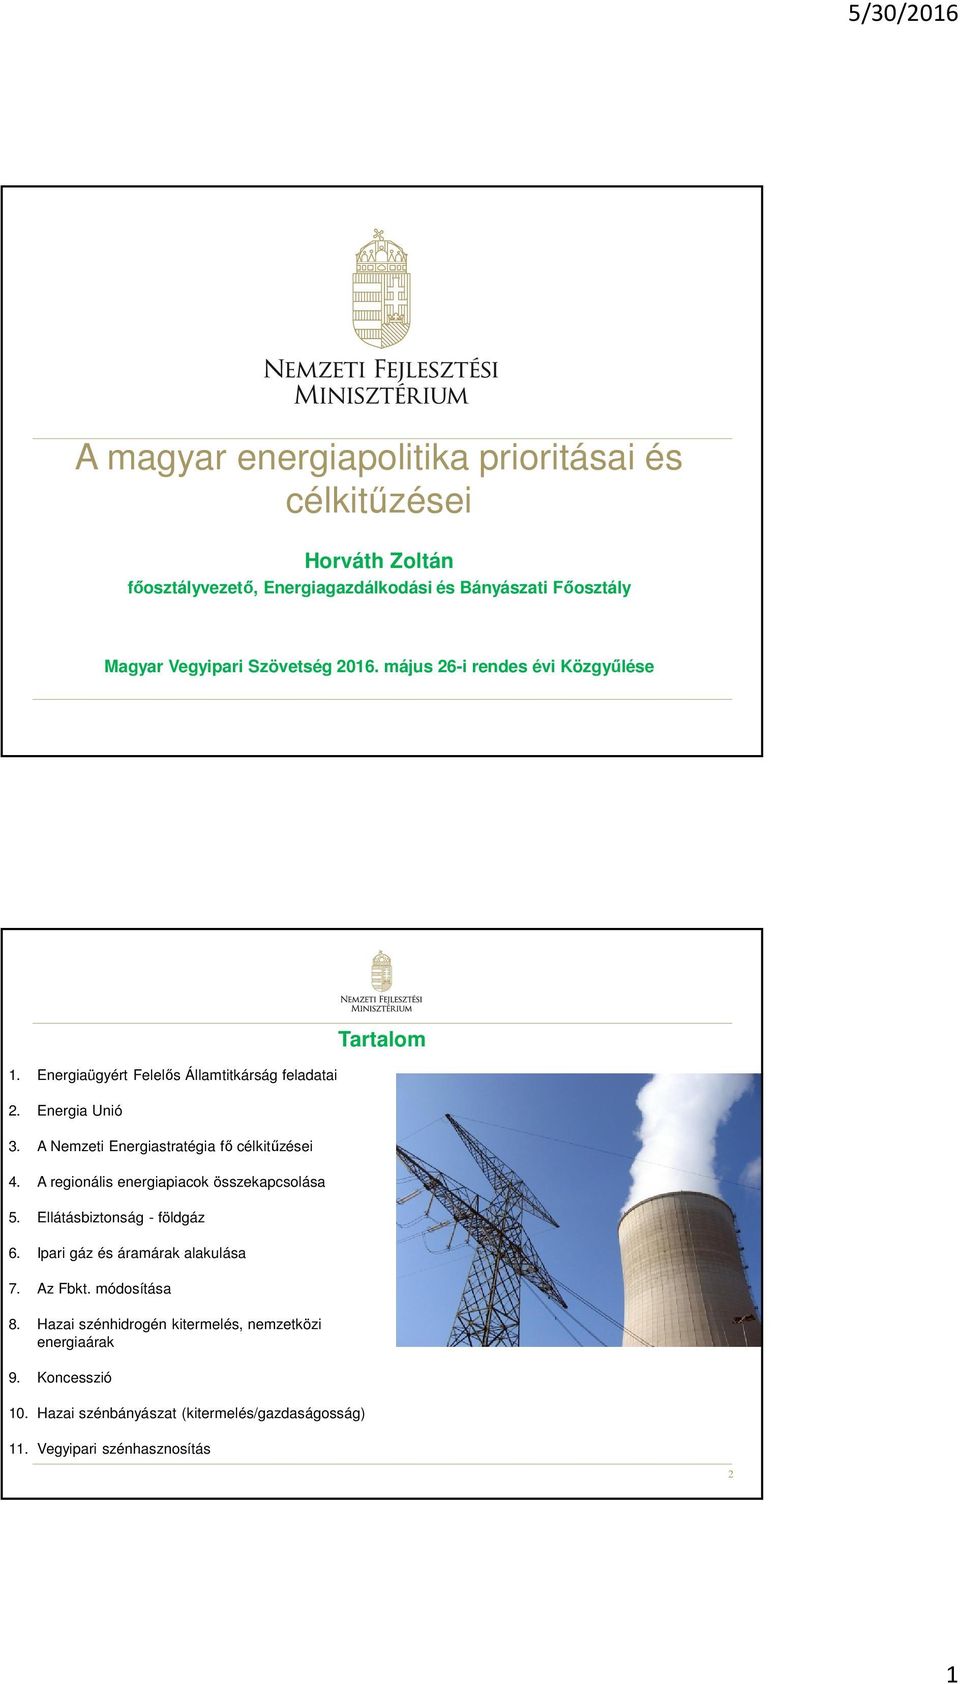 A Nemzeti Energiastratégia fő célkitűzései 4. A regionális energiapiacok összekapcsolása 5. Ellátásbiztonság - földgáz 6.